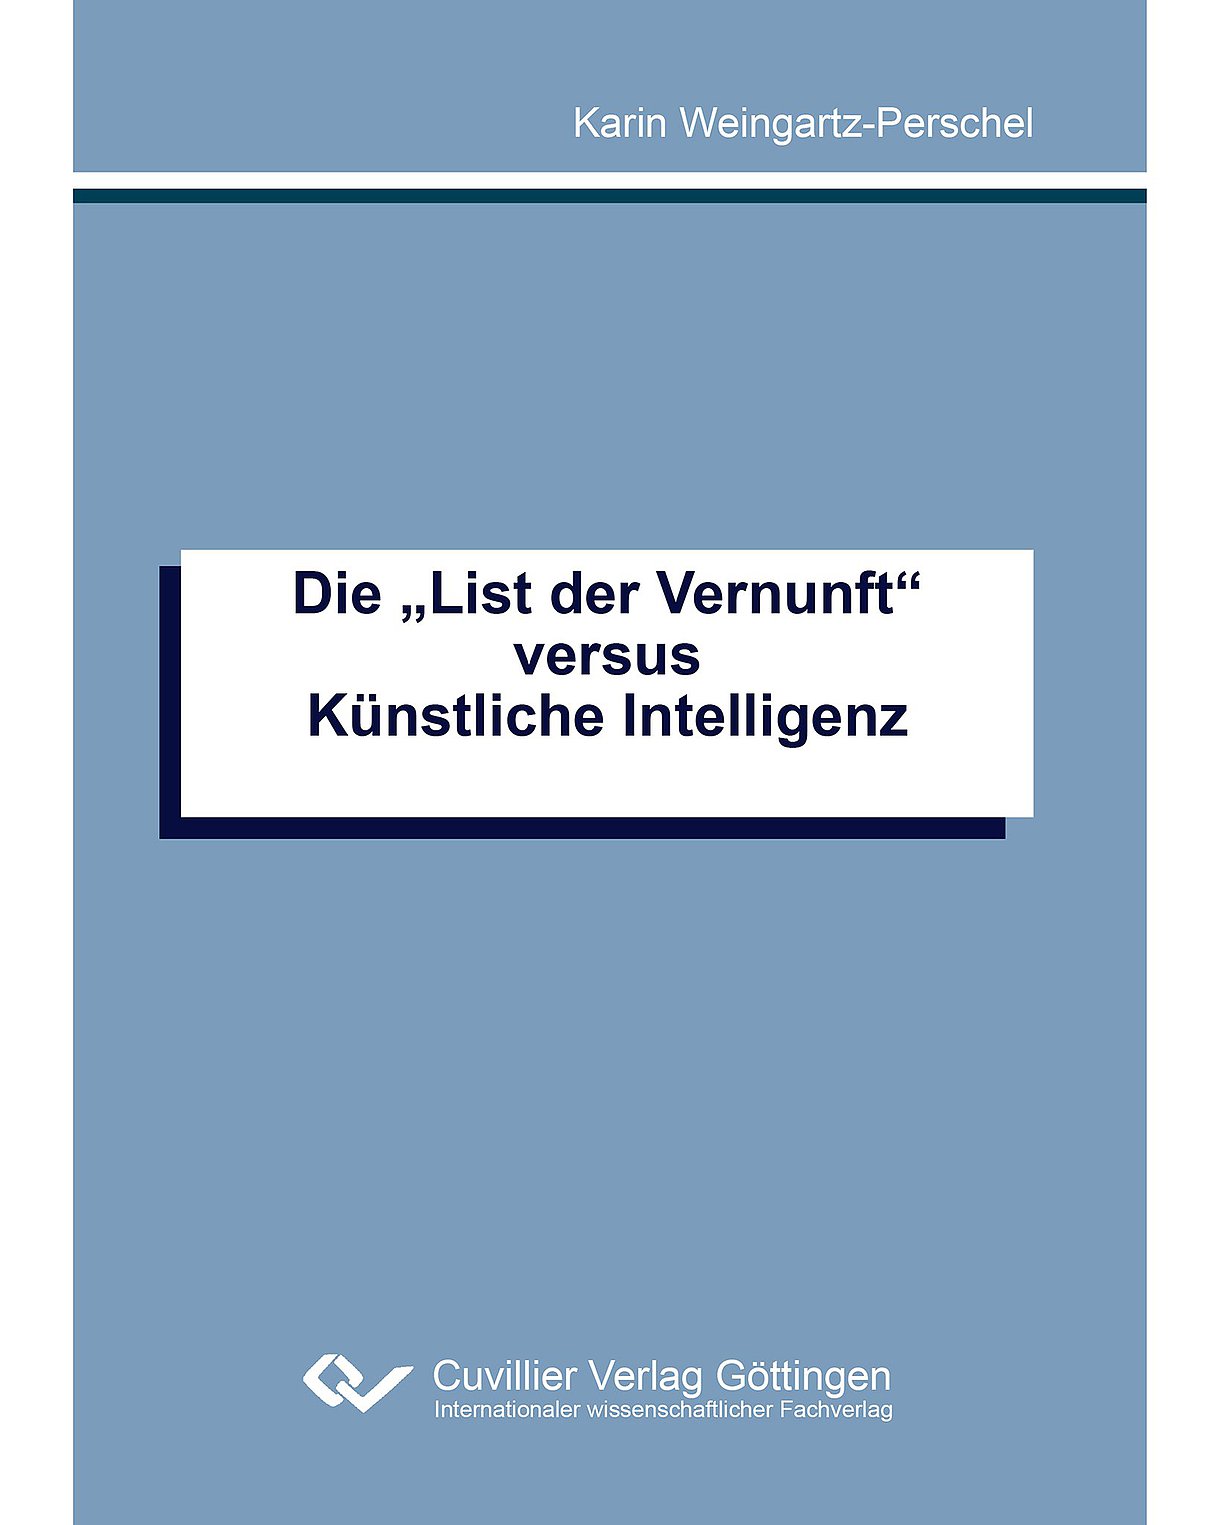 Mittelblaues Cover des Buches "Die ,List der Vernunft' versus Künstliche Intelligenz"